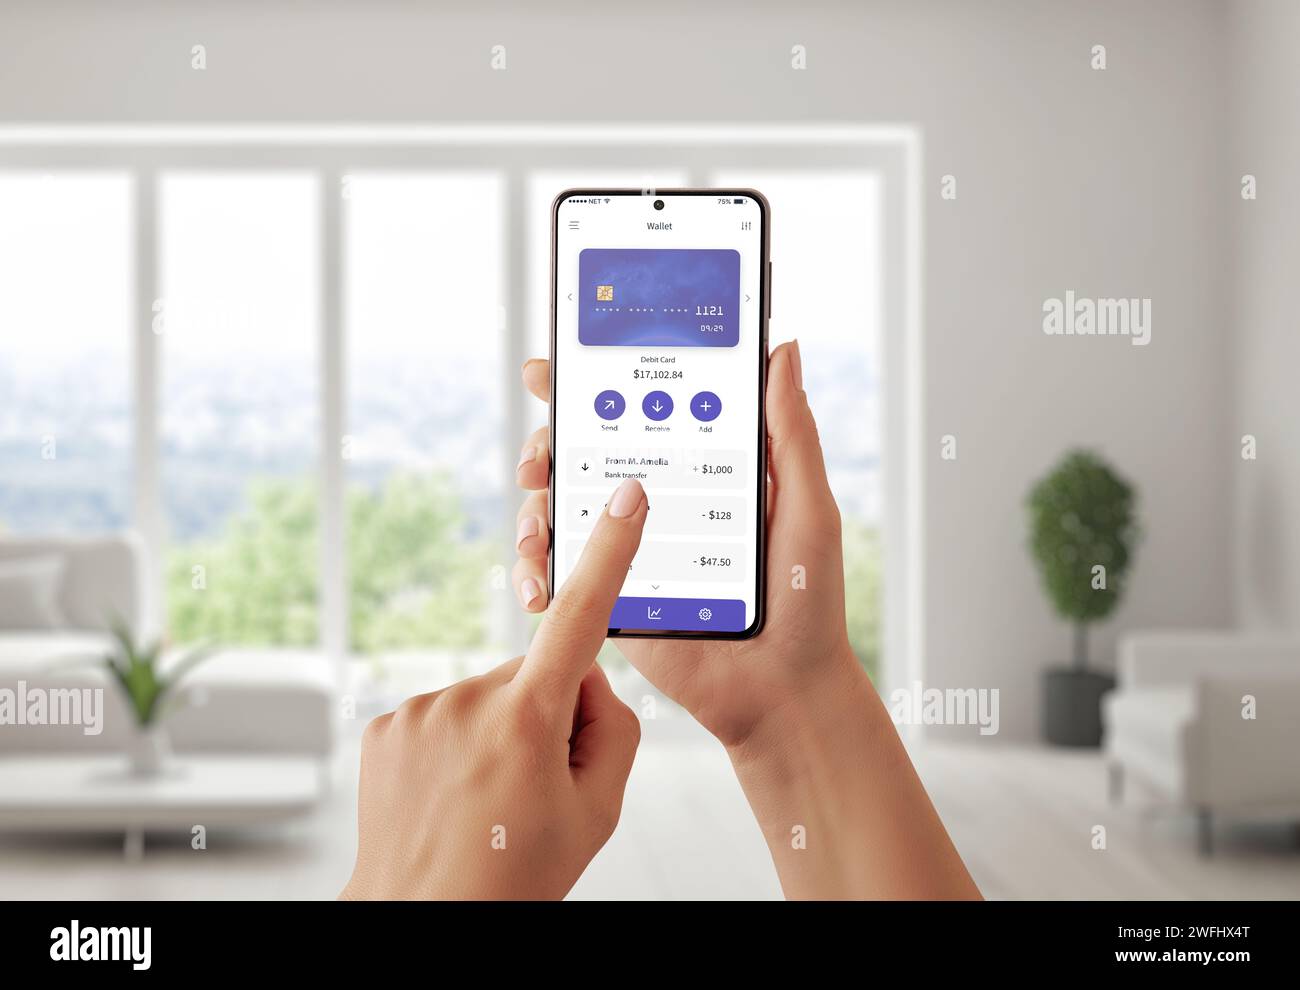 Lo smartphone mostra l'usabilità del fintech con un design concettuale dell'app, con una carta di credito e transazioni. Gestione finanziaria semplificata Foto Stock